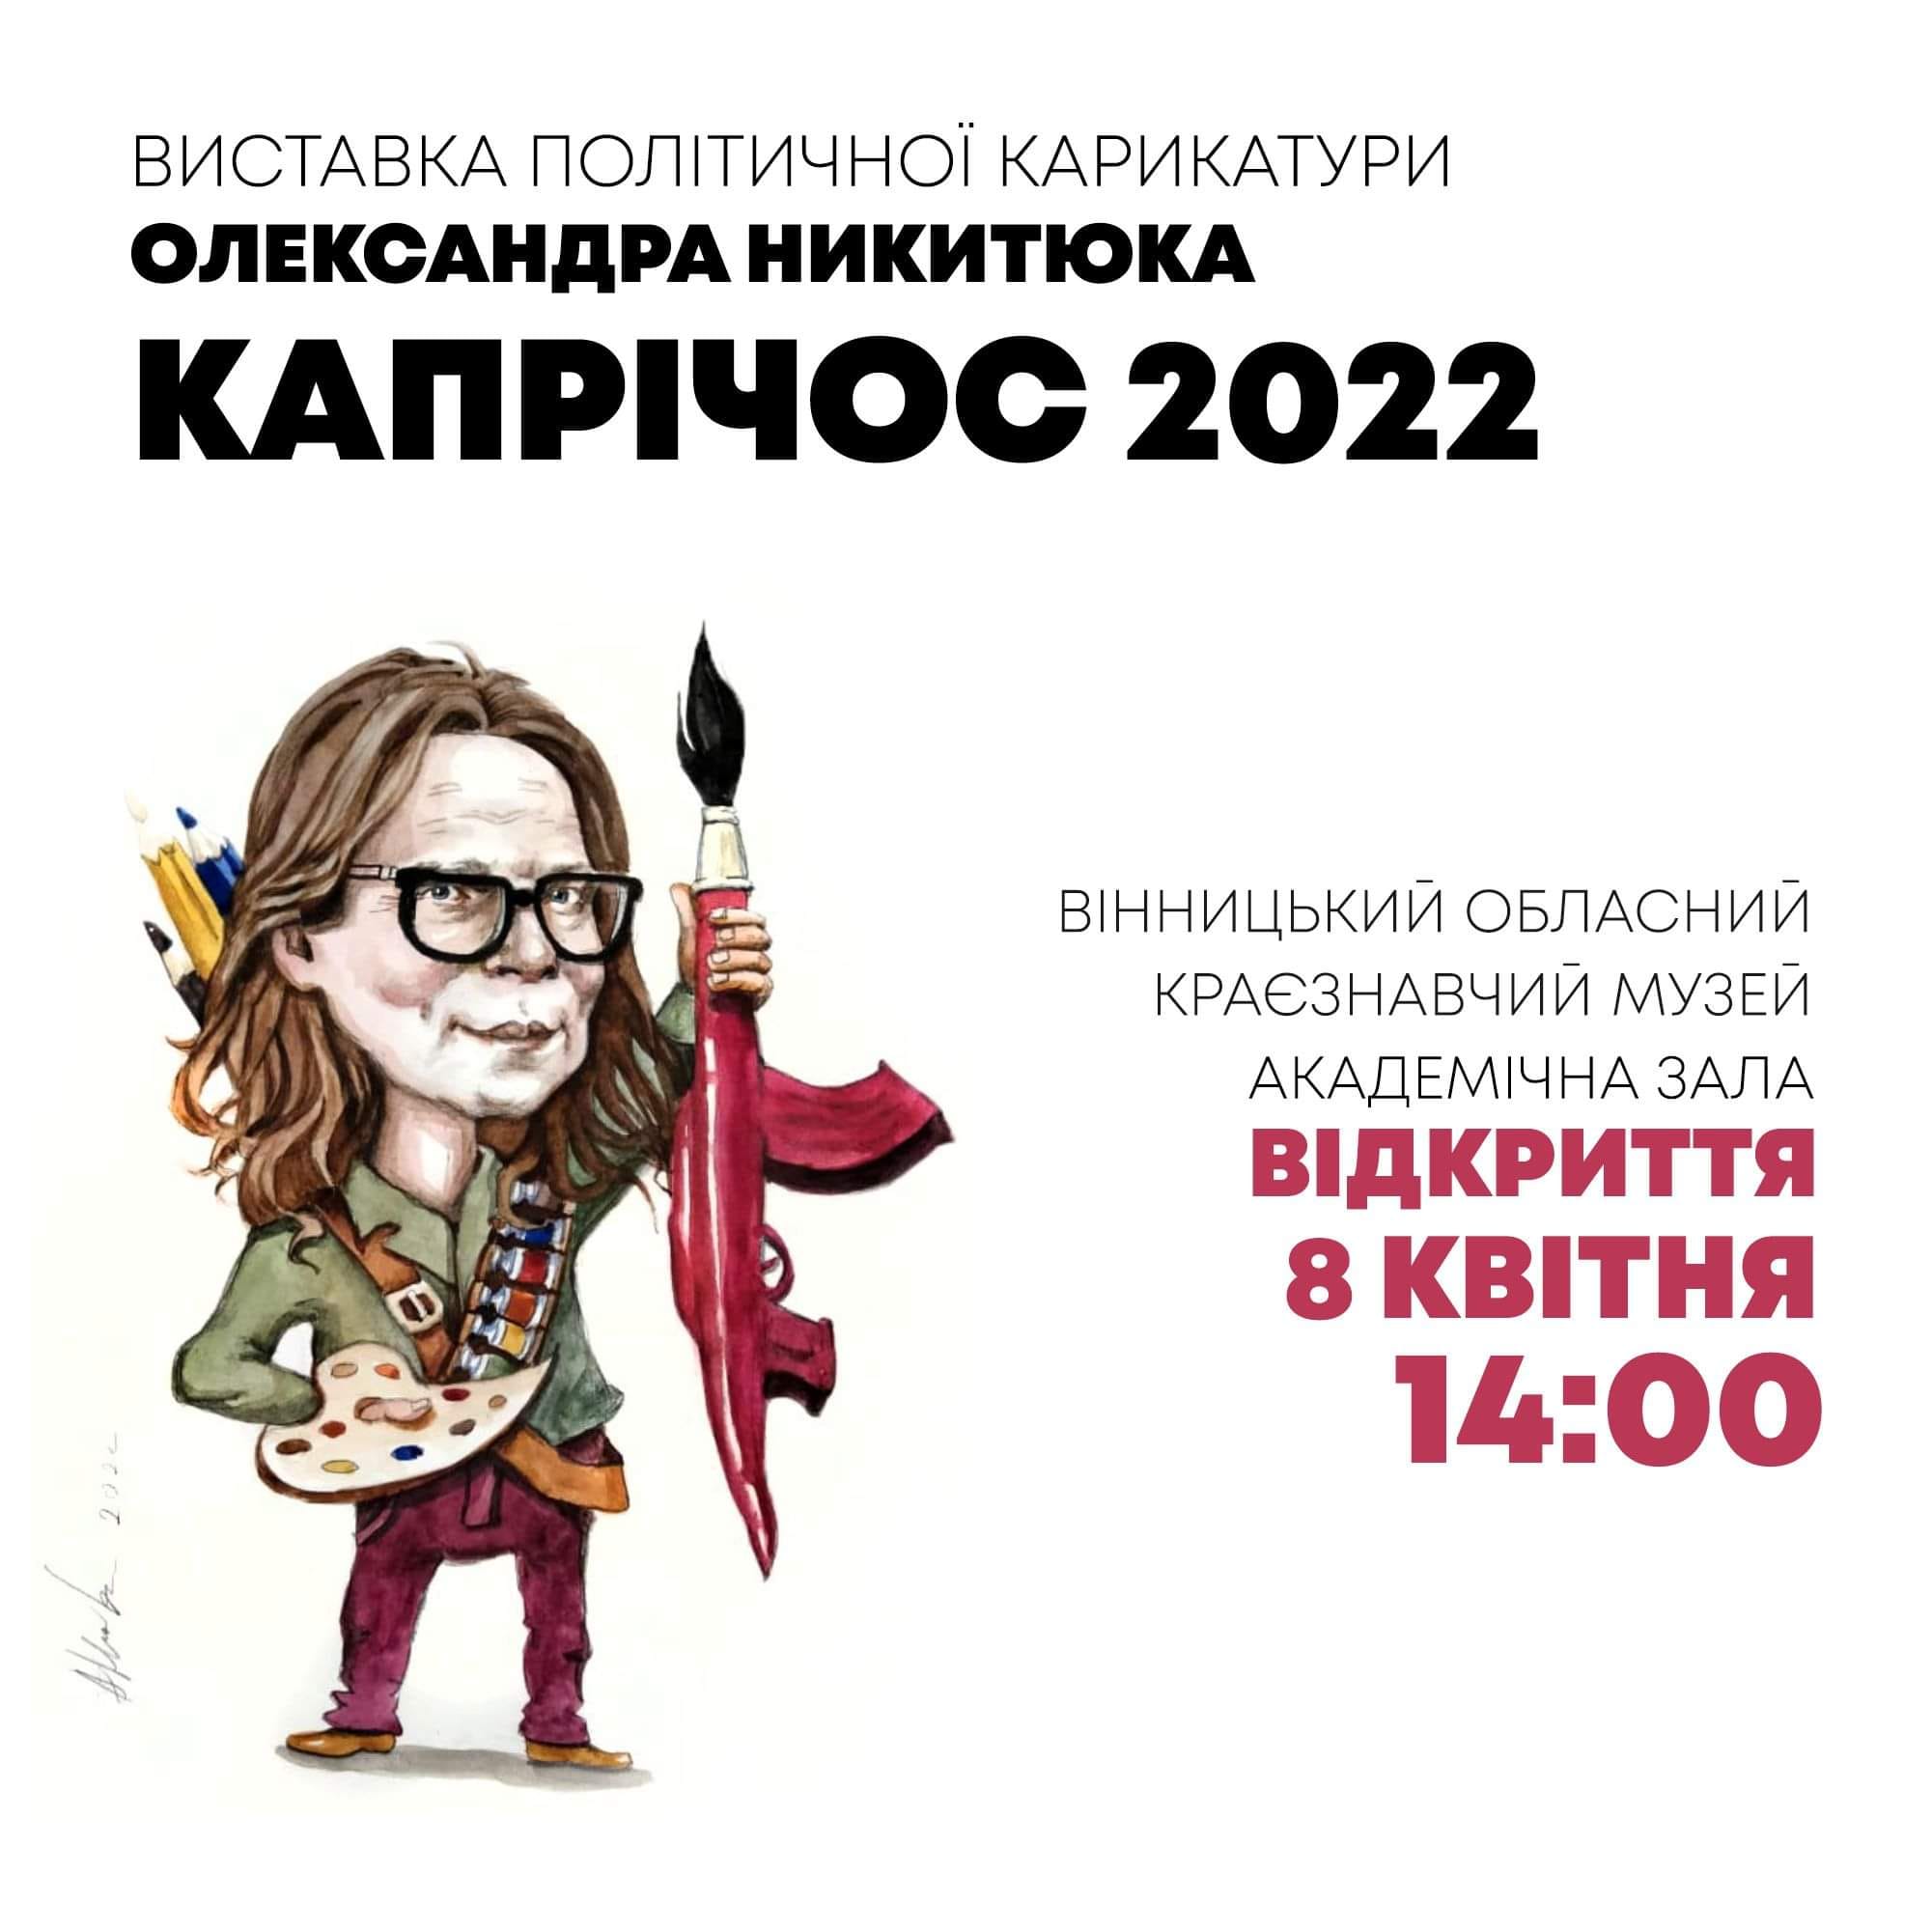 Вінничан запрошують на виставку сатиричних, гротескних робіт про війну Олександра Никитюка «Капрічос 2022»